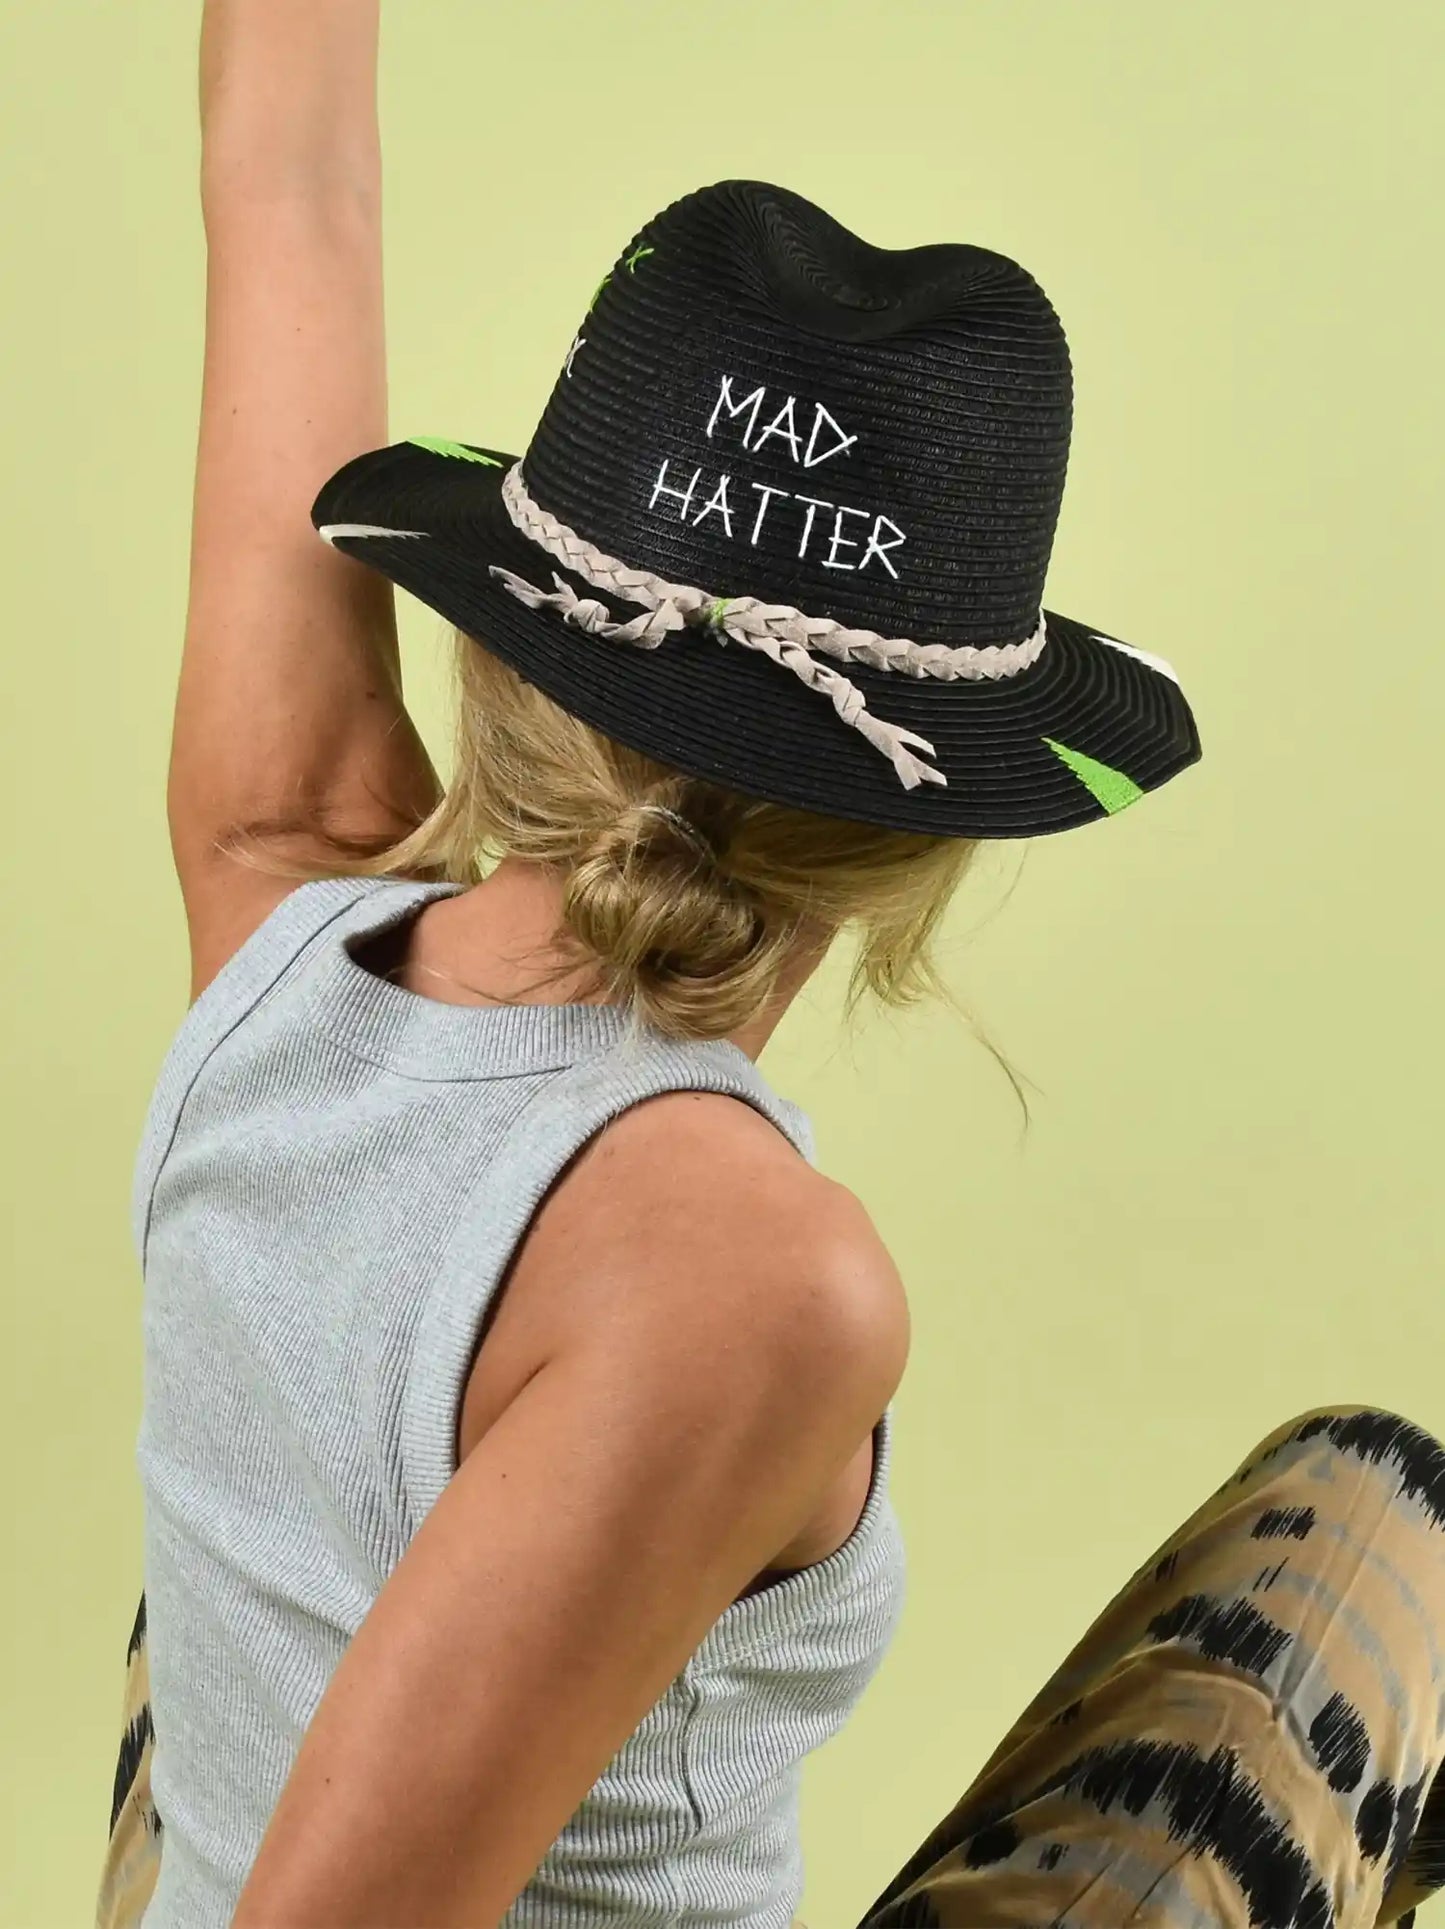 Mad Hatter Straw Hat